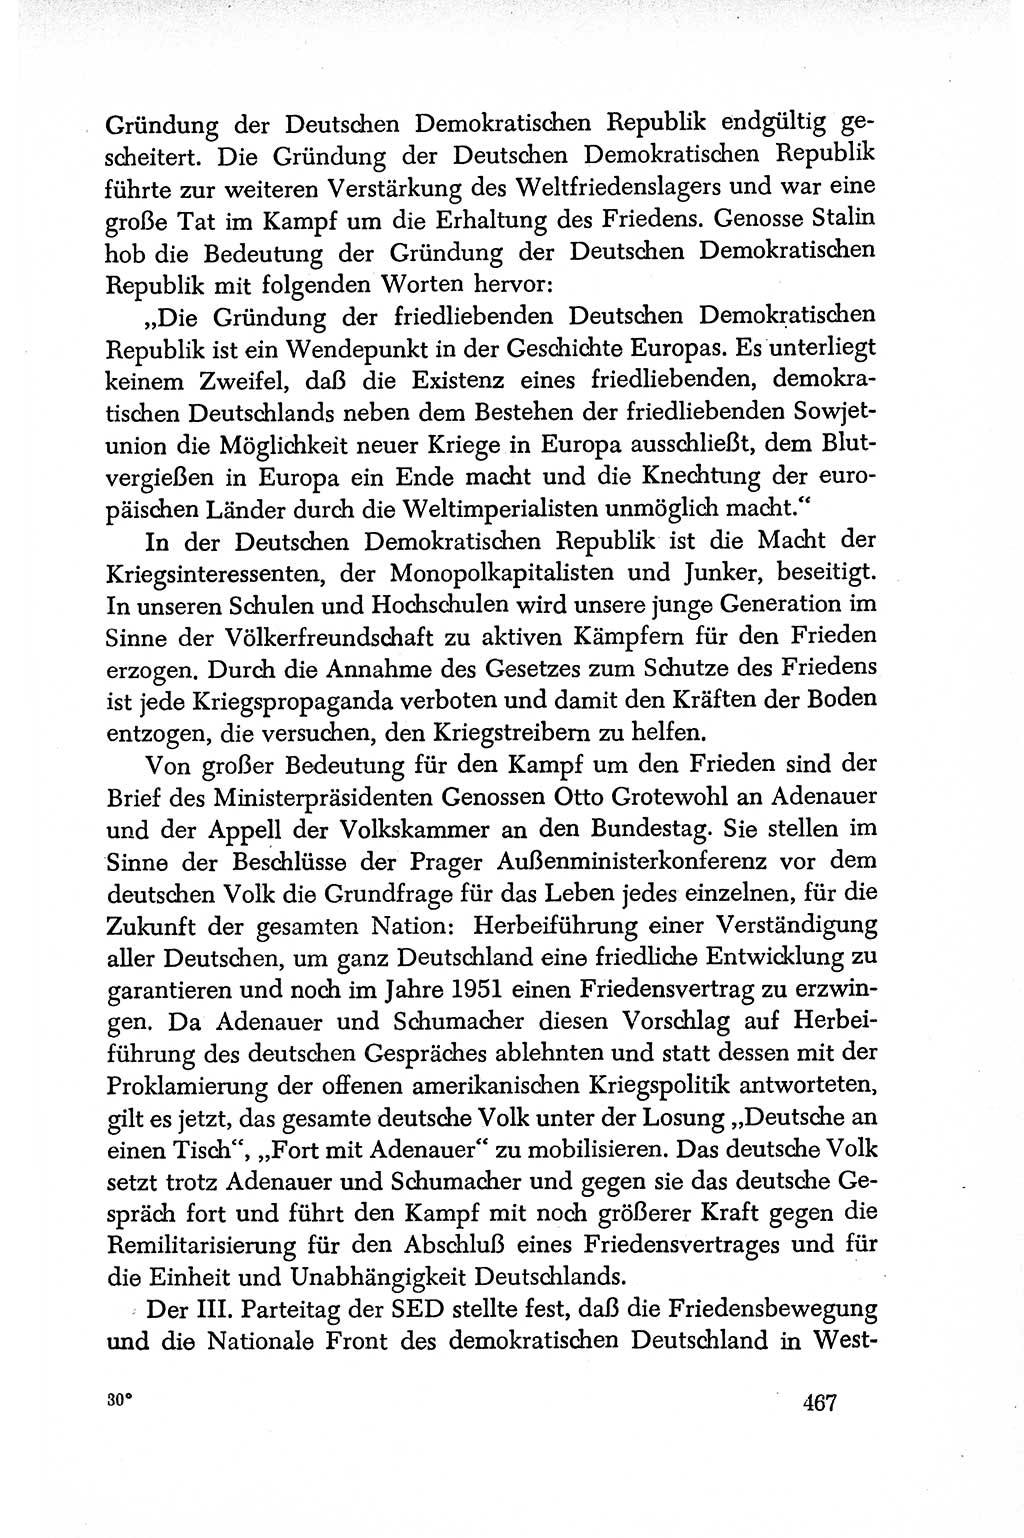 Dokumente der Sozialistischen Einheitspartei Deutschlands (SED) [Deutsche Demokratische Republik (DDR)] 1950-1952, Seite 467 (Dok. SED DDR 1950-1952, S. 467)